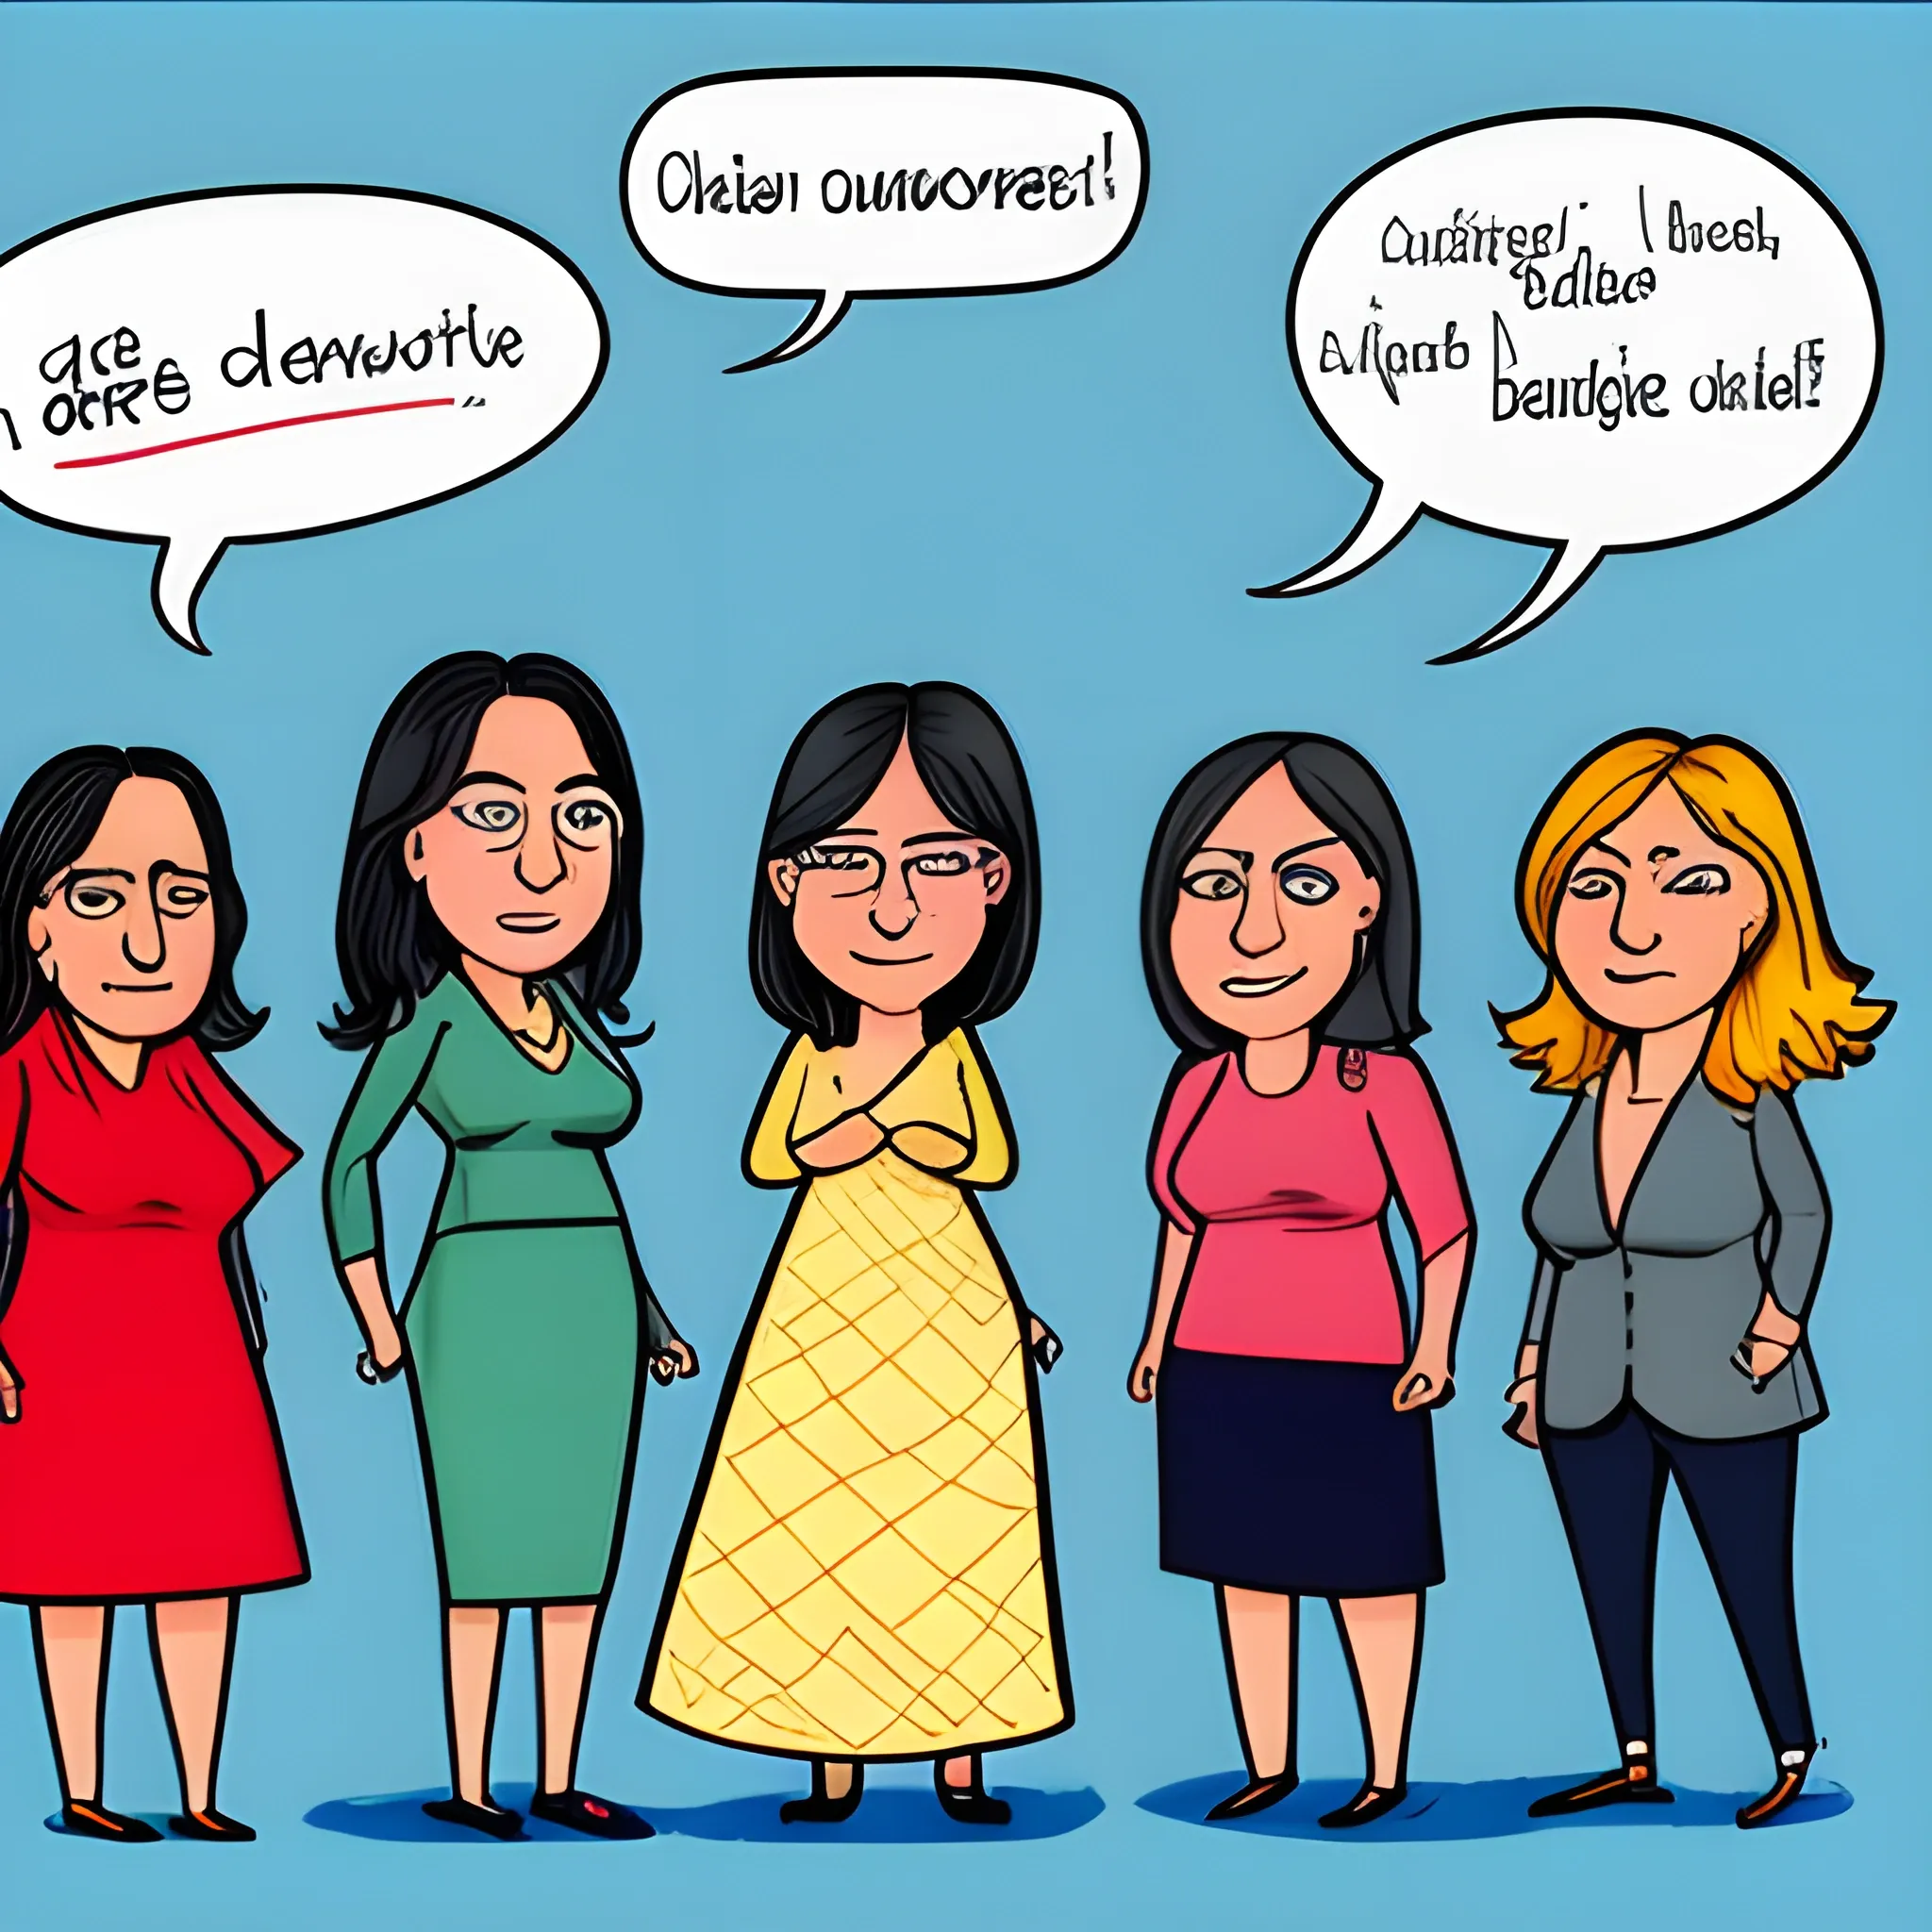 Diversos tipos de mujeres luchando la desigualdad social en Chile
Cartoon, Cartoon